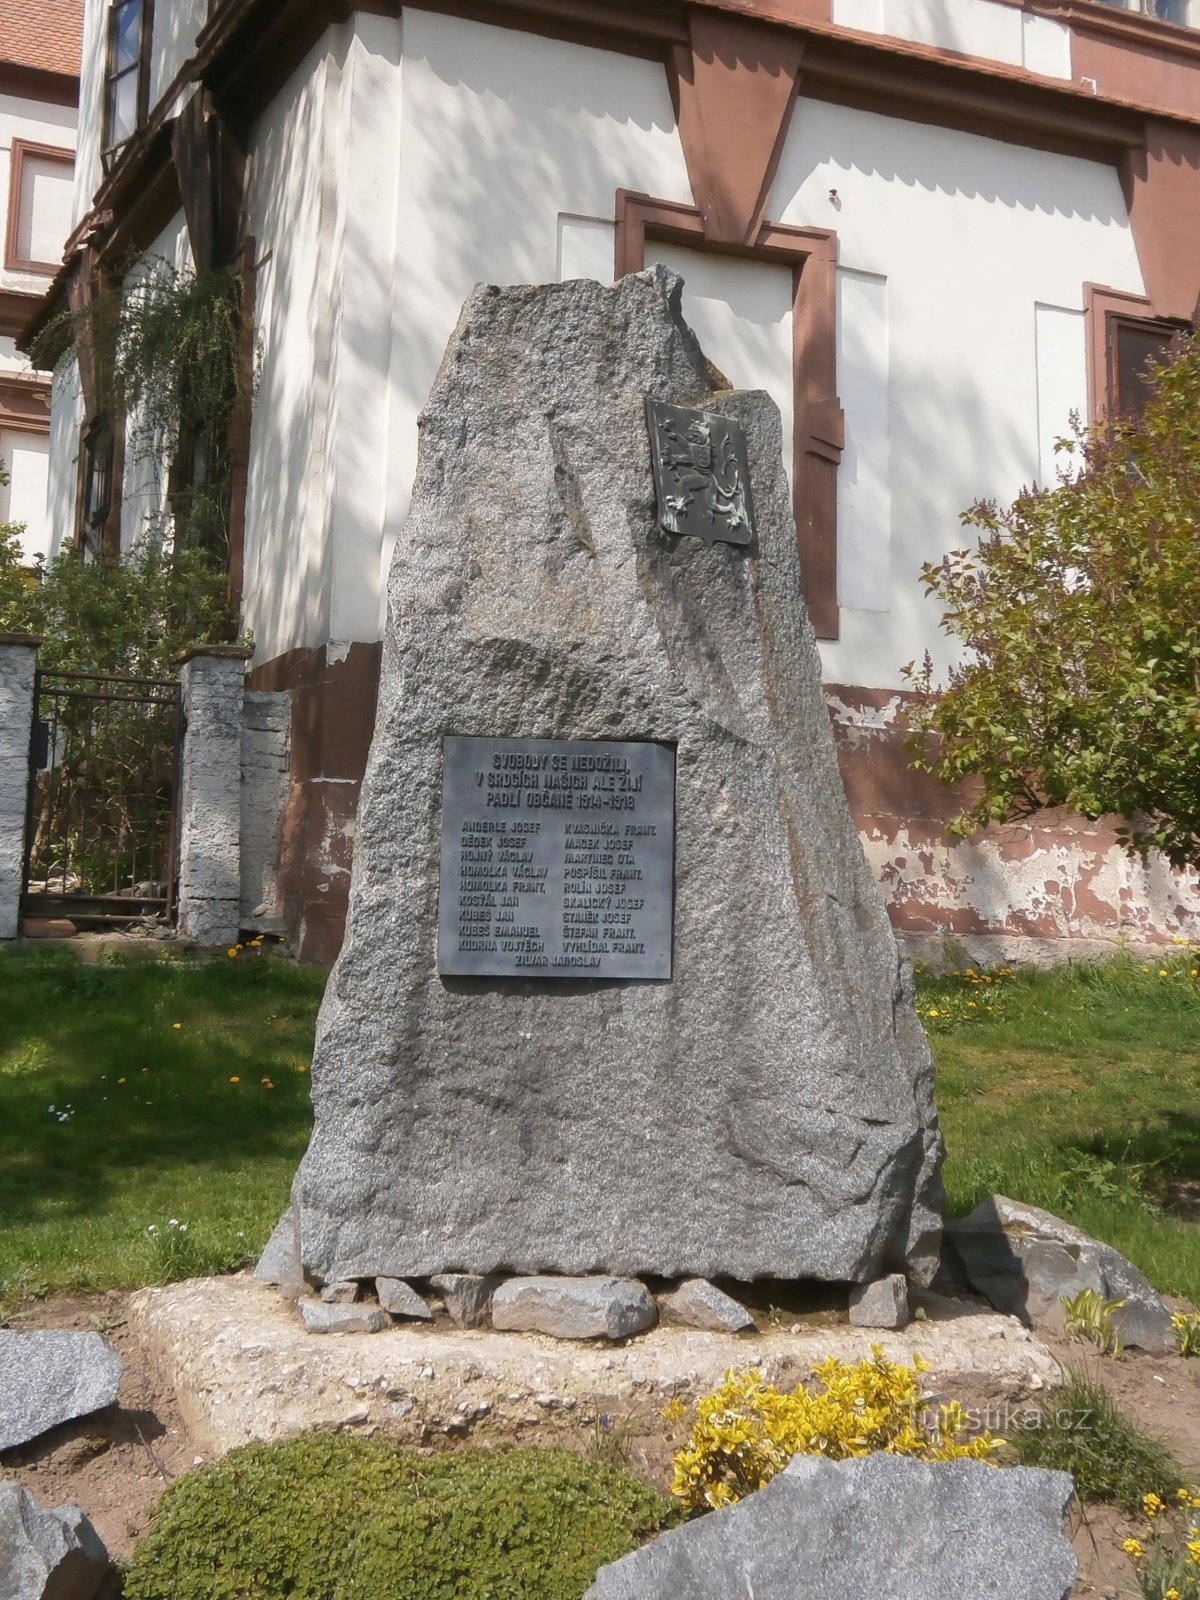 Đài tưởng niệm những người đã chết trong Chiến tranh thế giới thứ nhất (Hořiněves)